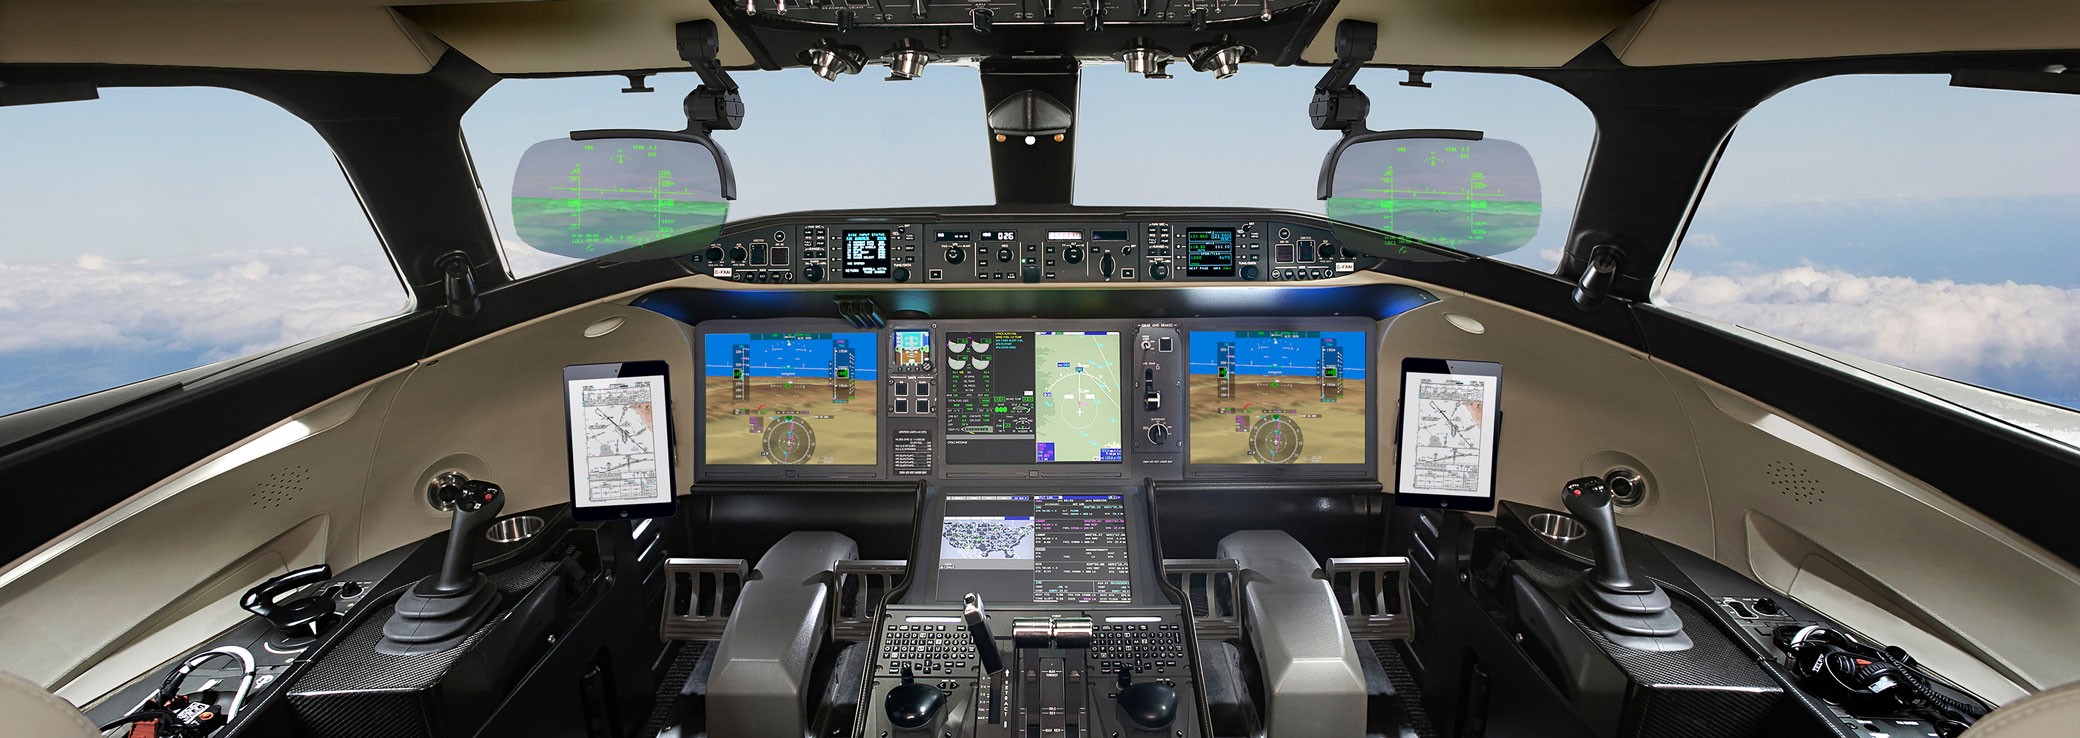 Global 8000 cockpit